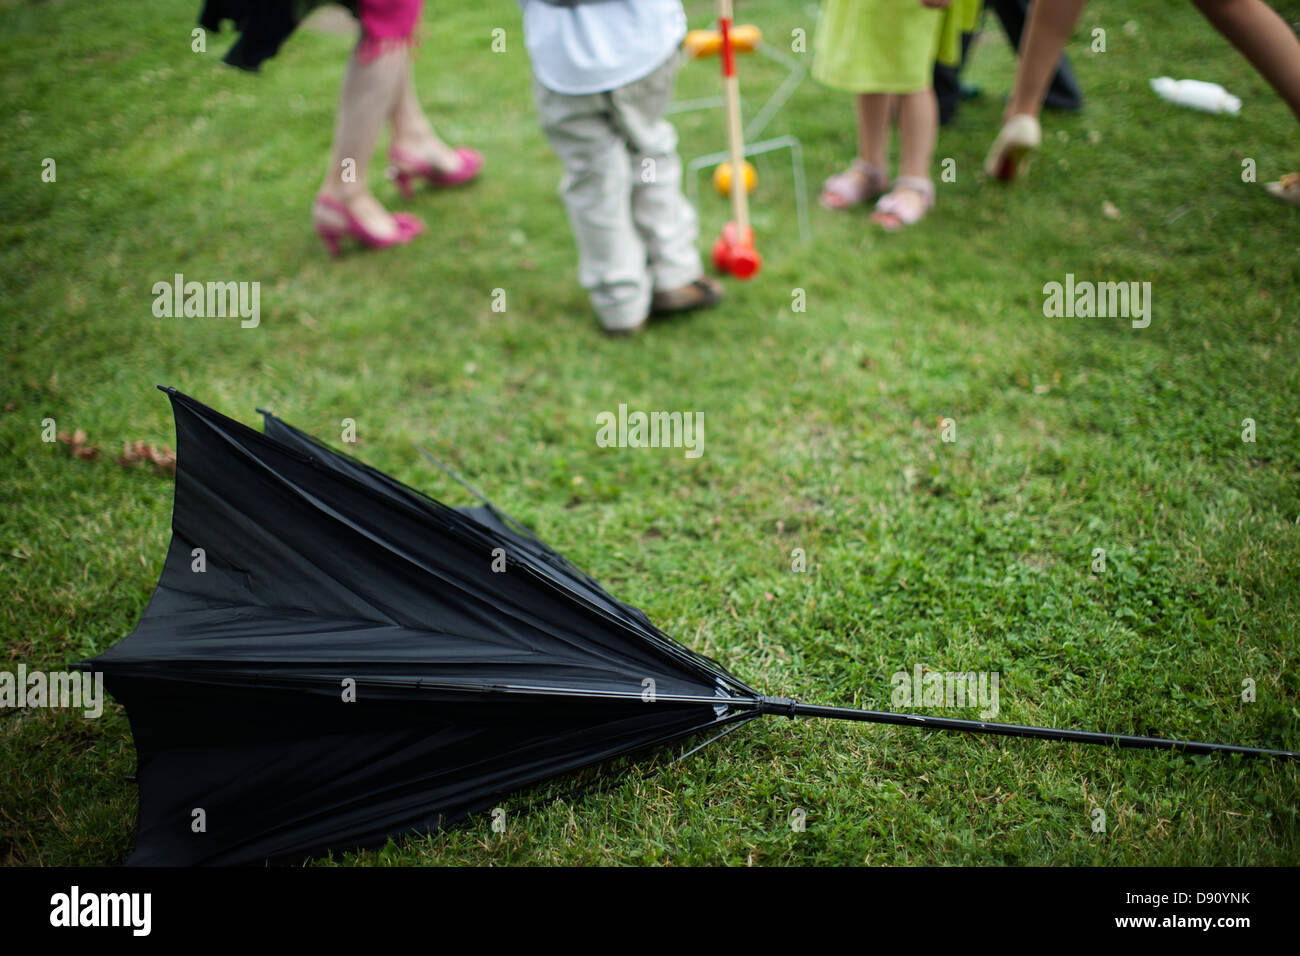 Beschädigten Sonnenschirm auf Rasen, Menschen im Hintergrund Stockfoto